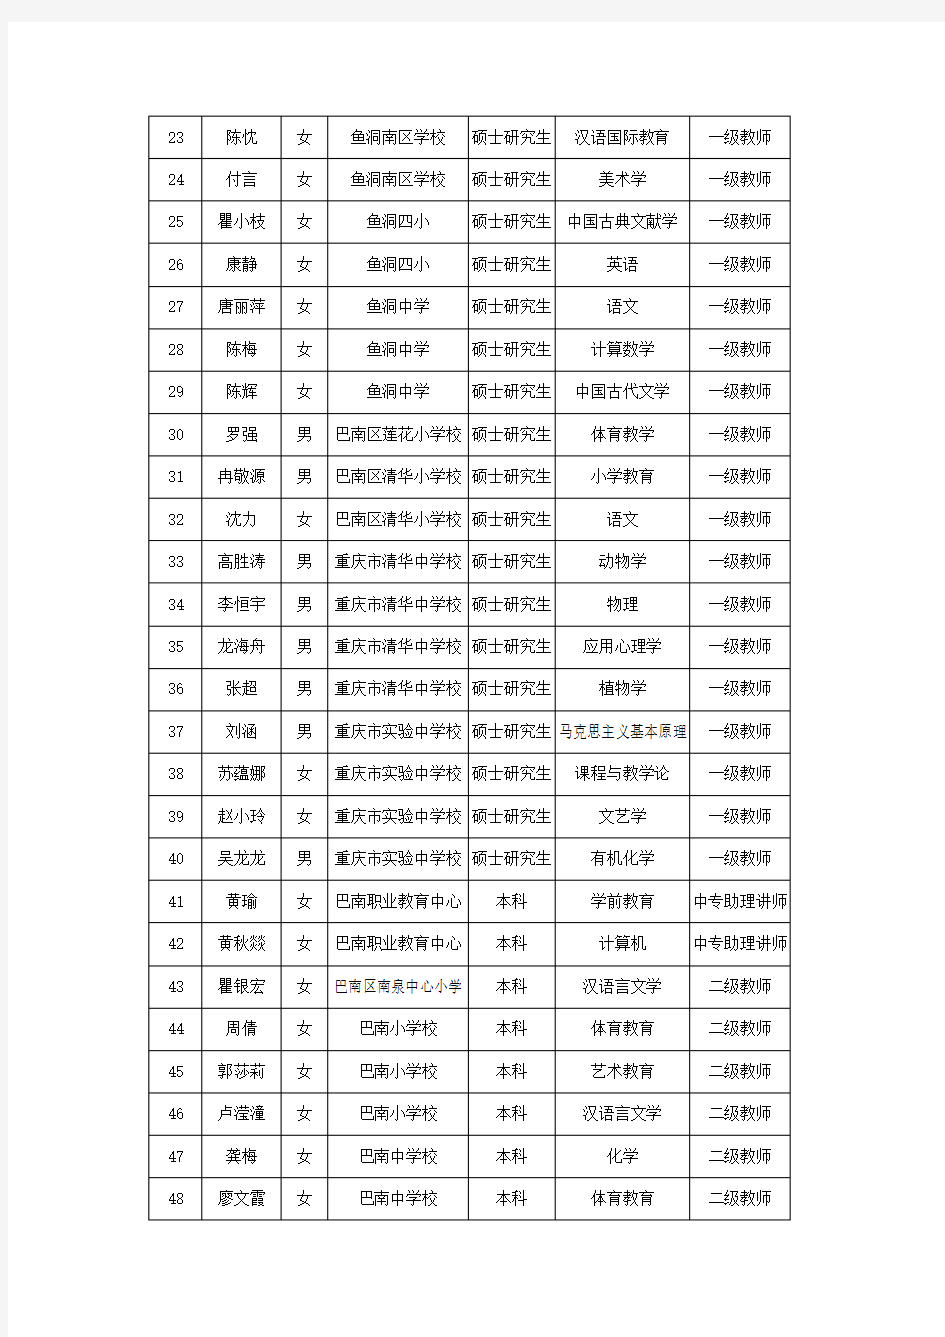 重庆巴南区职改办2018年8月拟确定职称公示名册